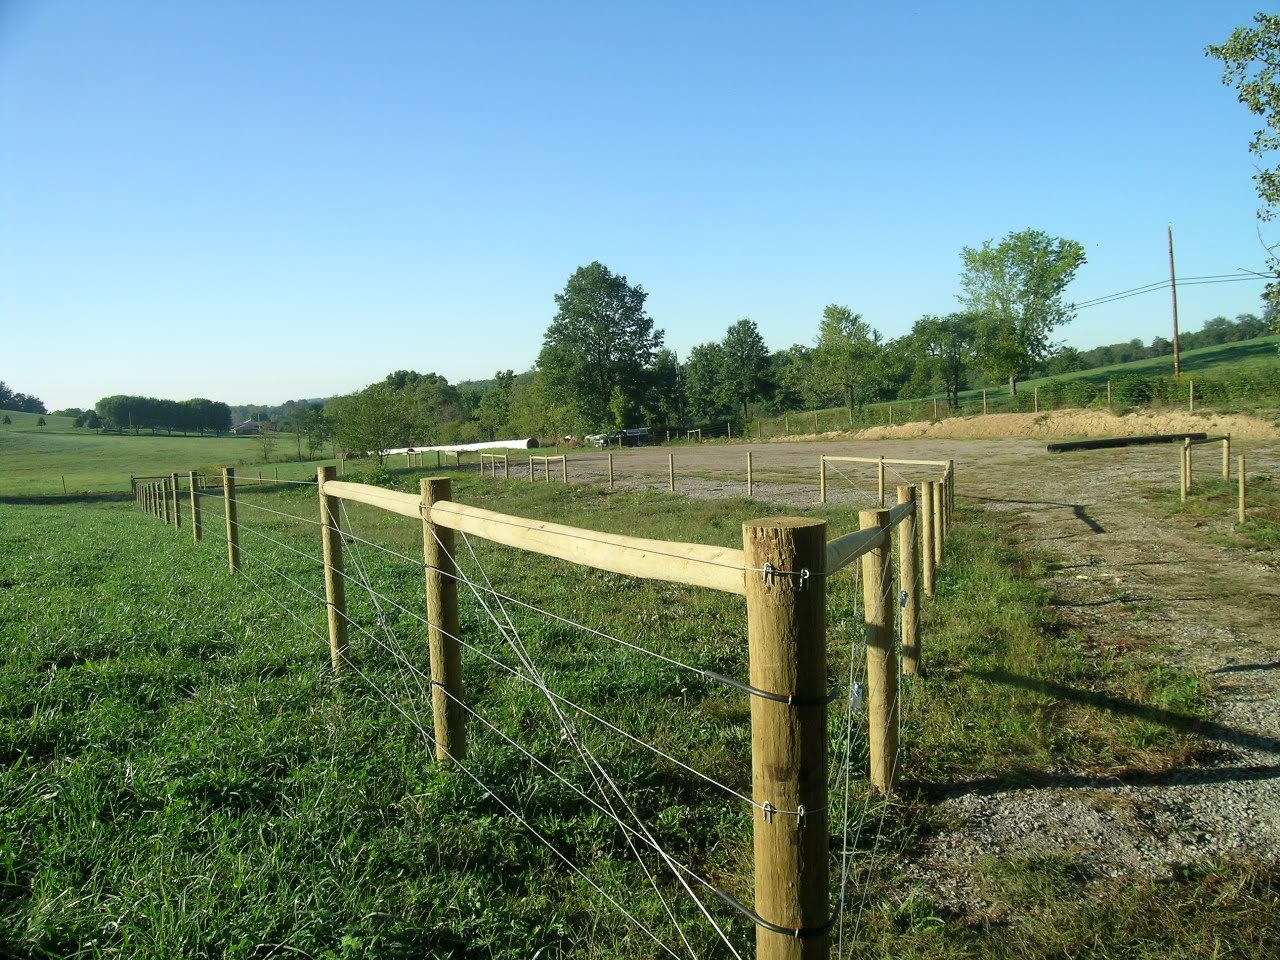 Exclusion fencing